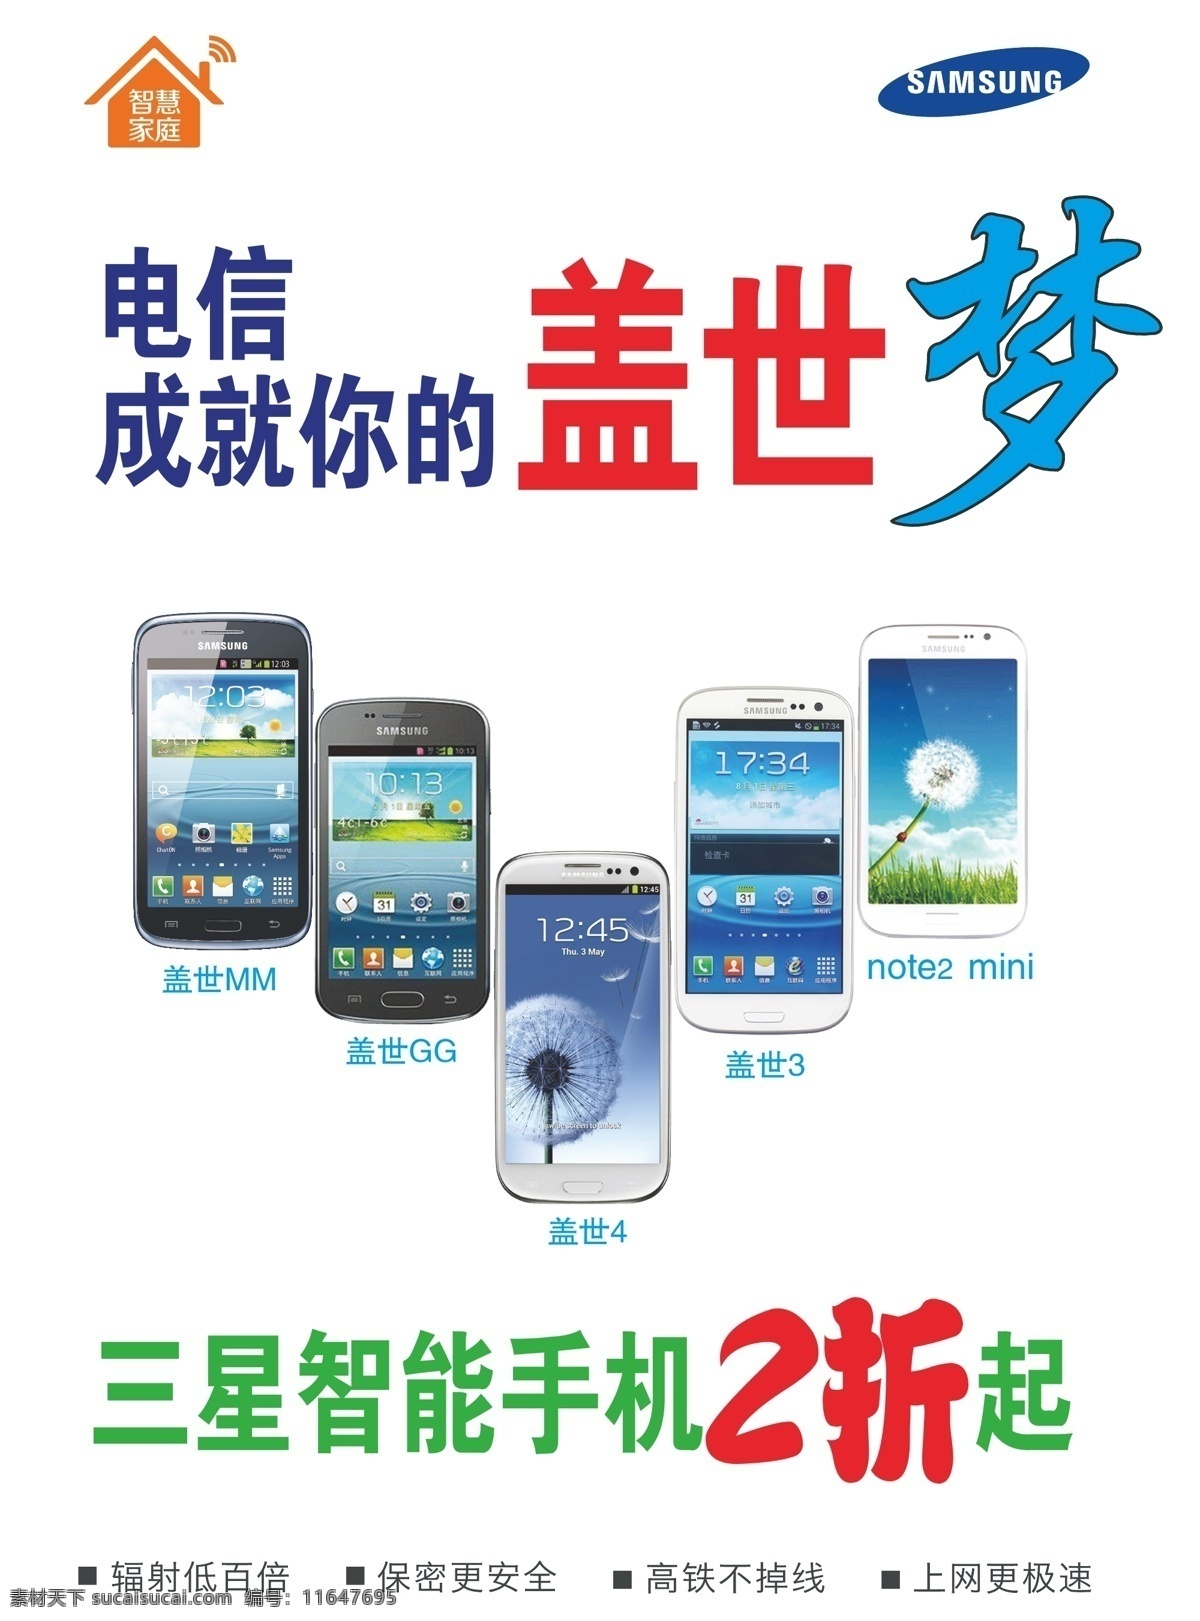 3g 包装设计 电子产品 智能手机 中国电信 三星 盖世 智能机 矢量 模板下载 三星盖世 智慧家庭 矢量图 现代科技